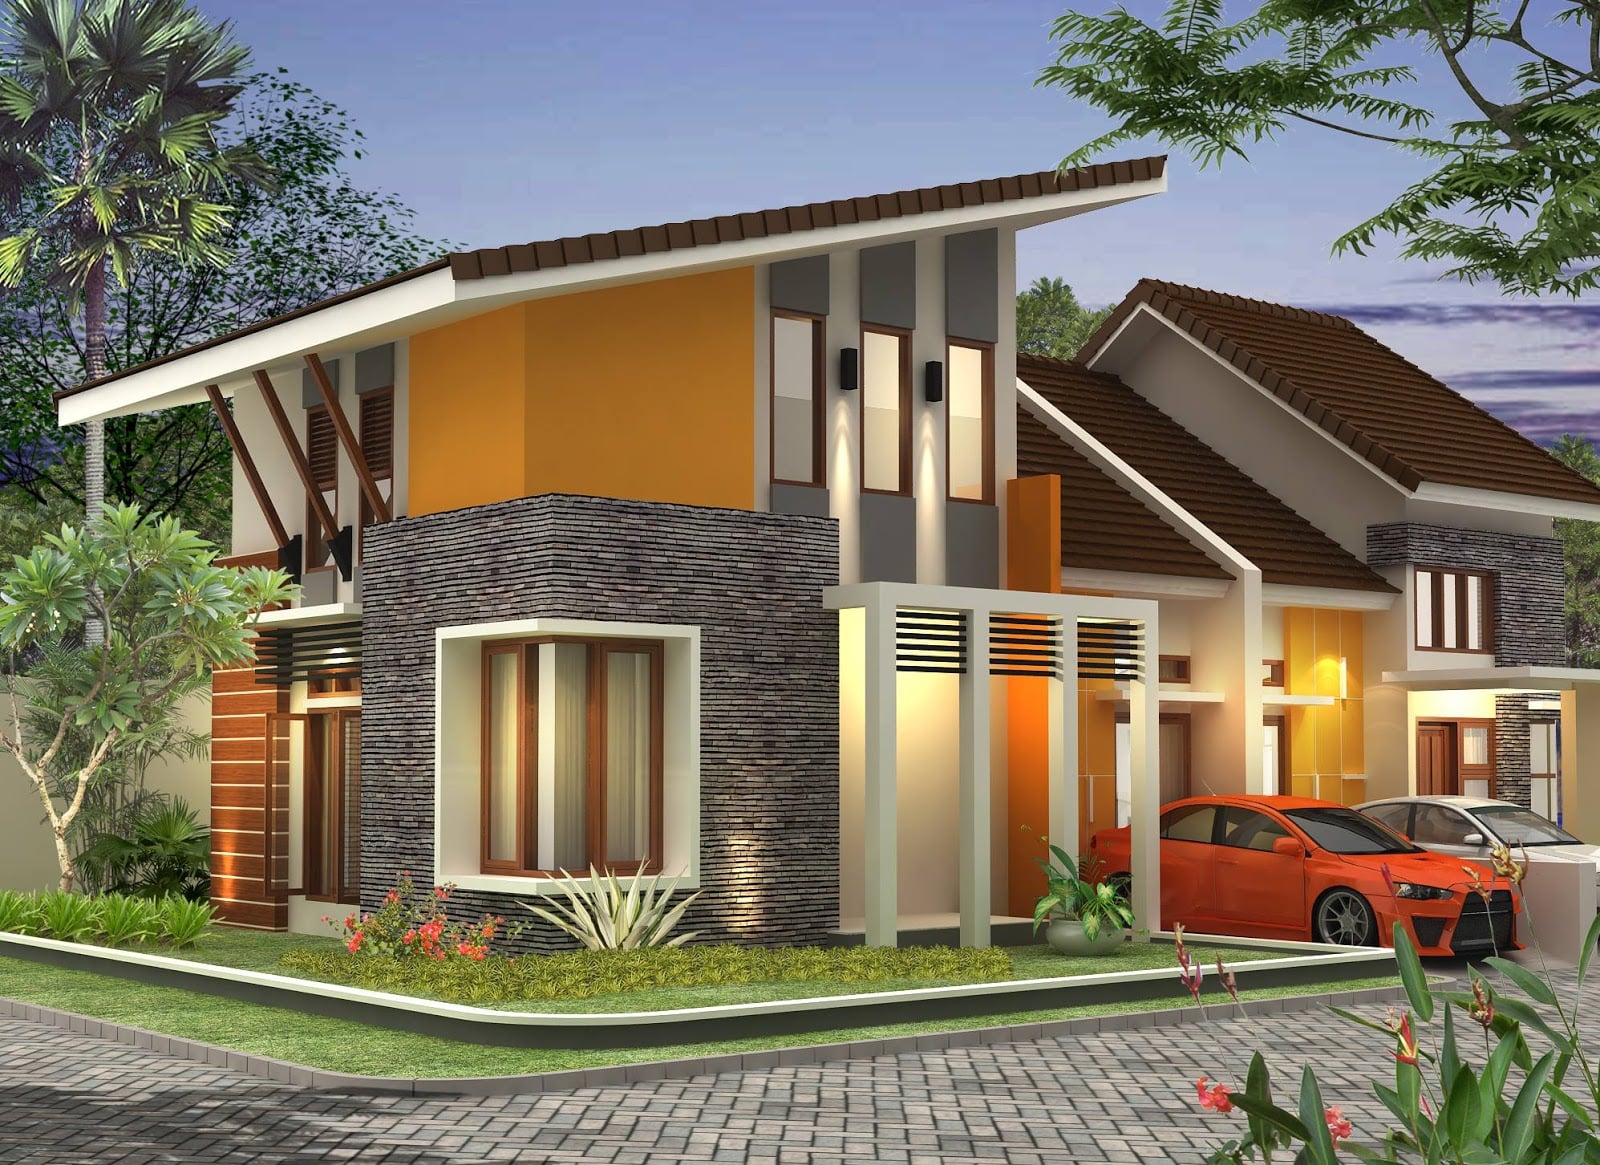 43 Contoh Desain Atap Rumah Kampung Kreatif Banget Deh Deagam Design